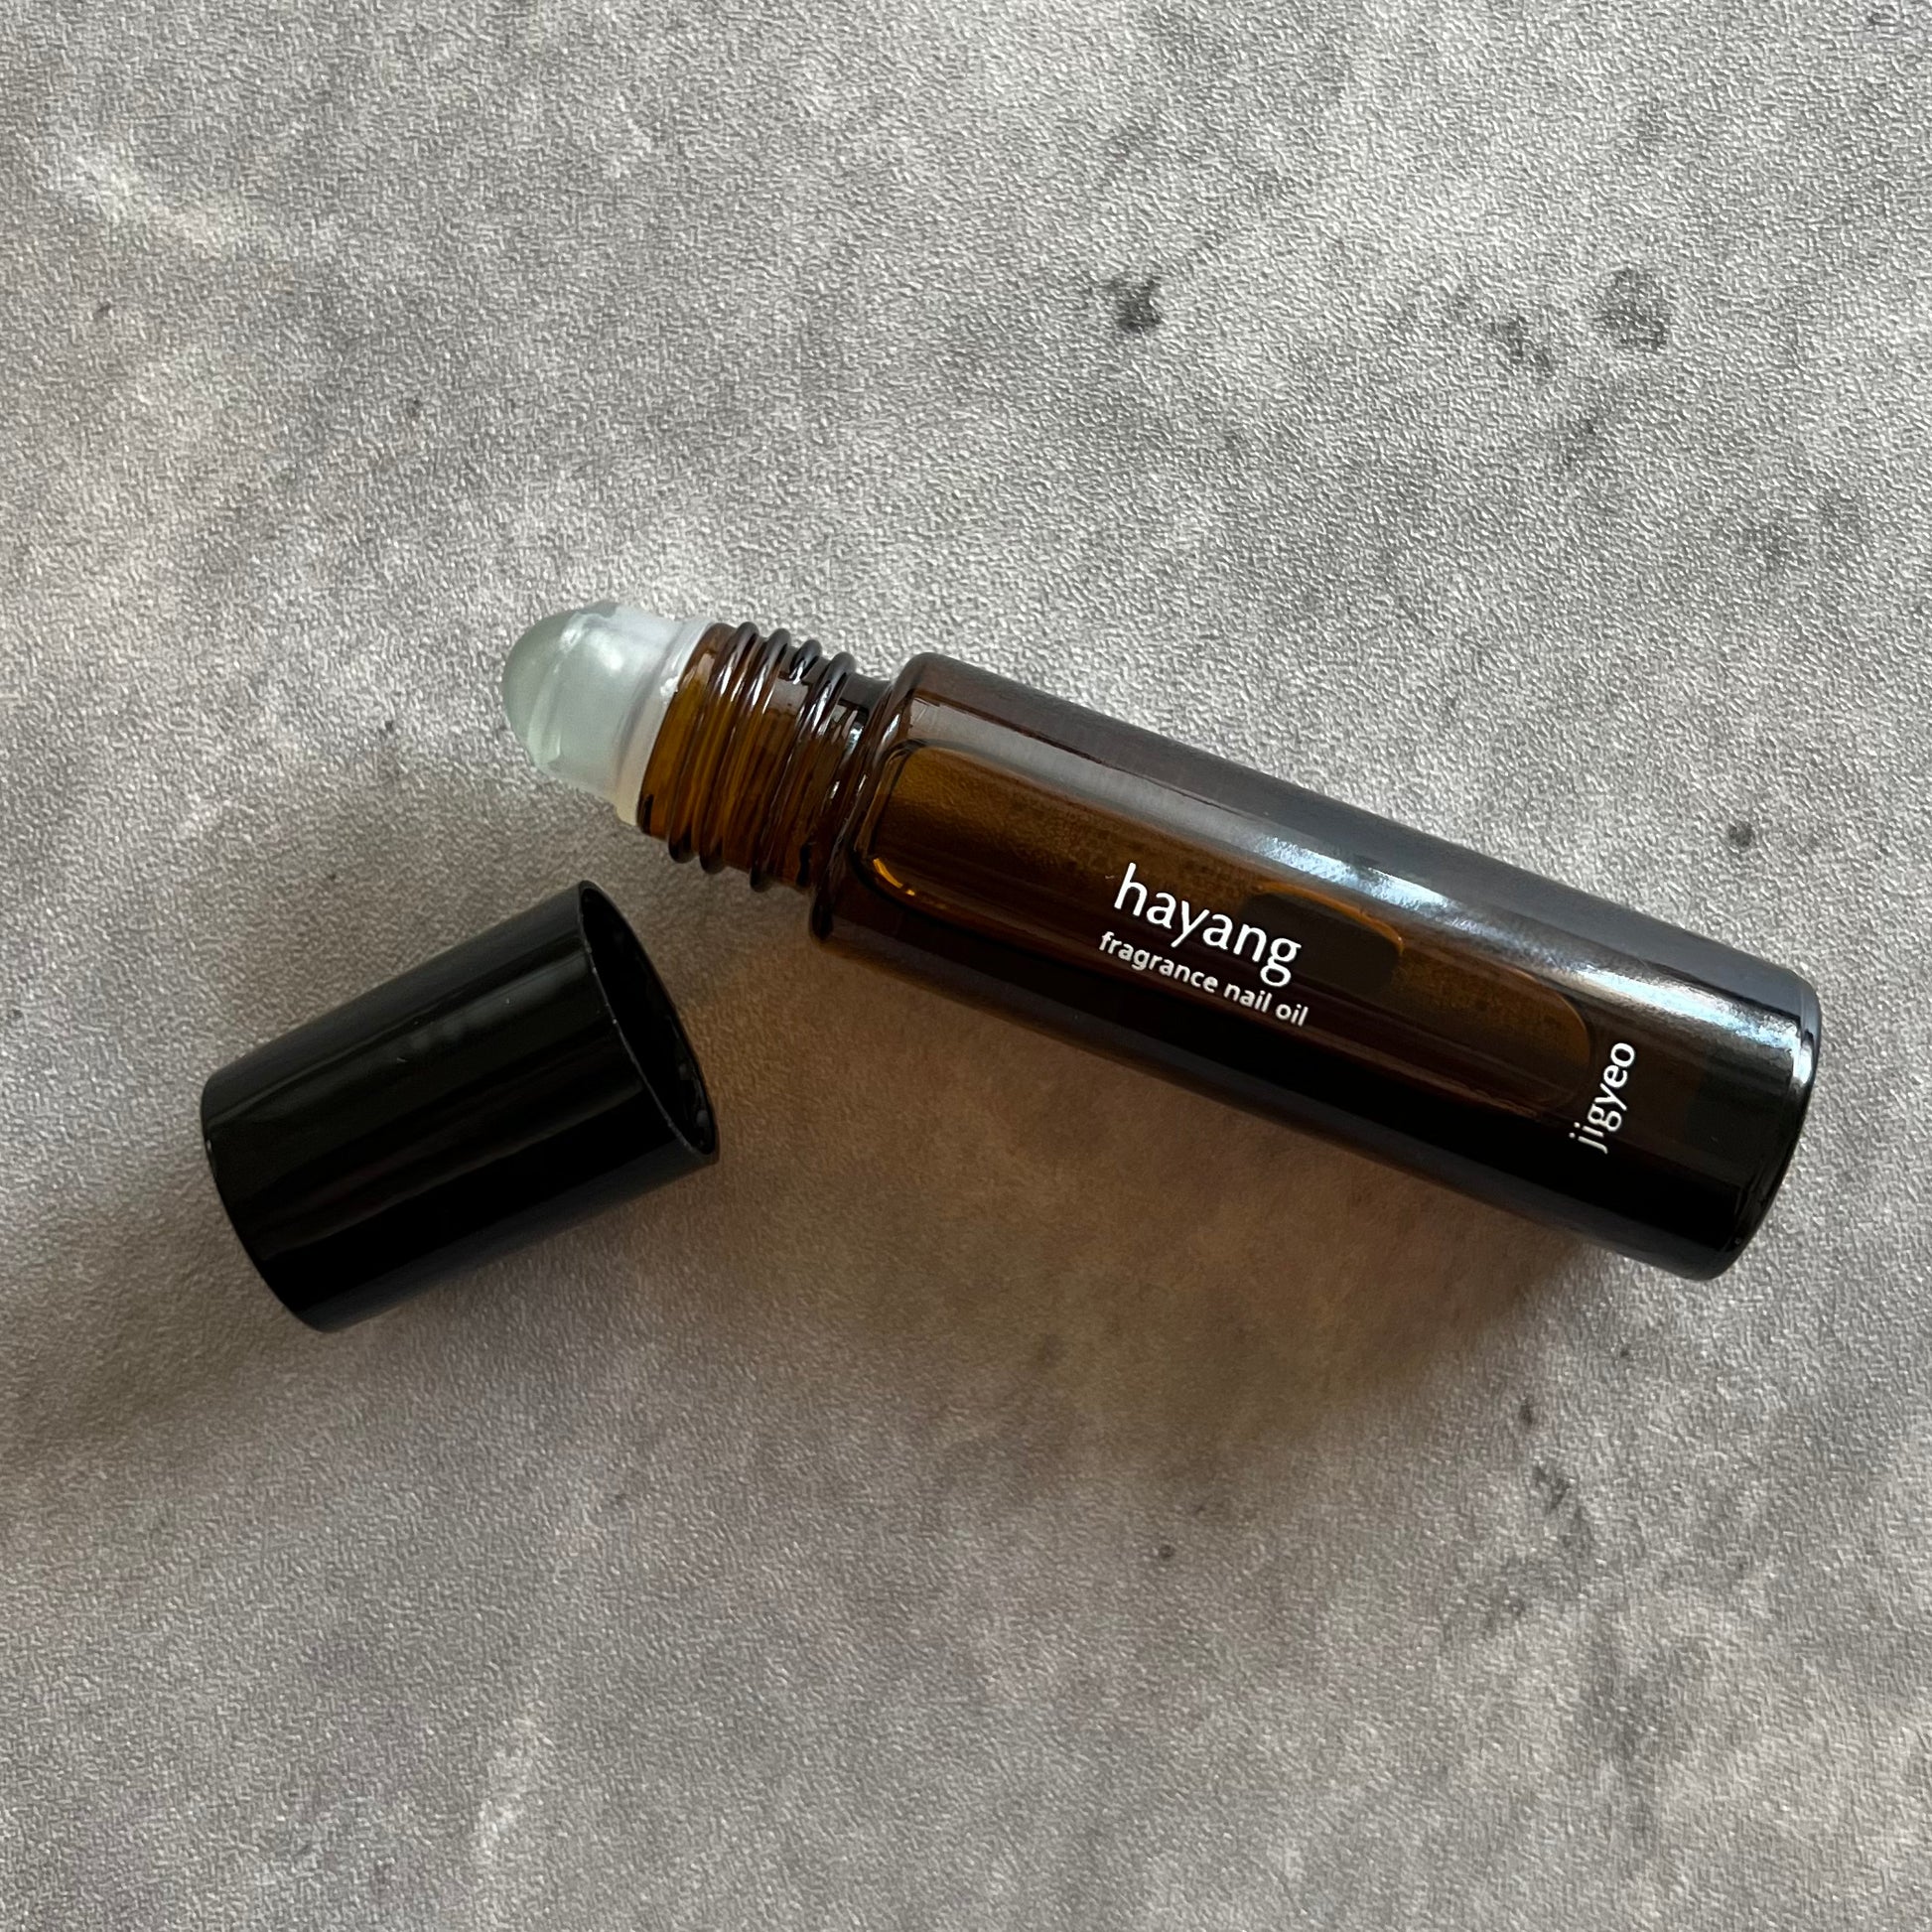 【3本セット】jigyeo fragrance nail oil